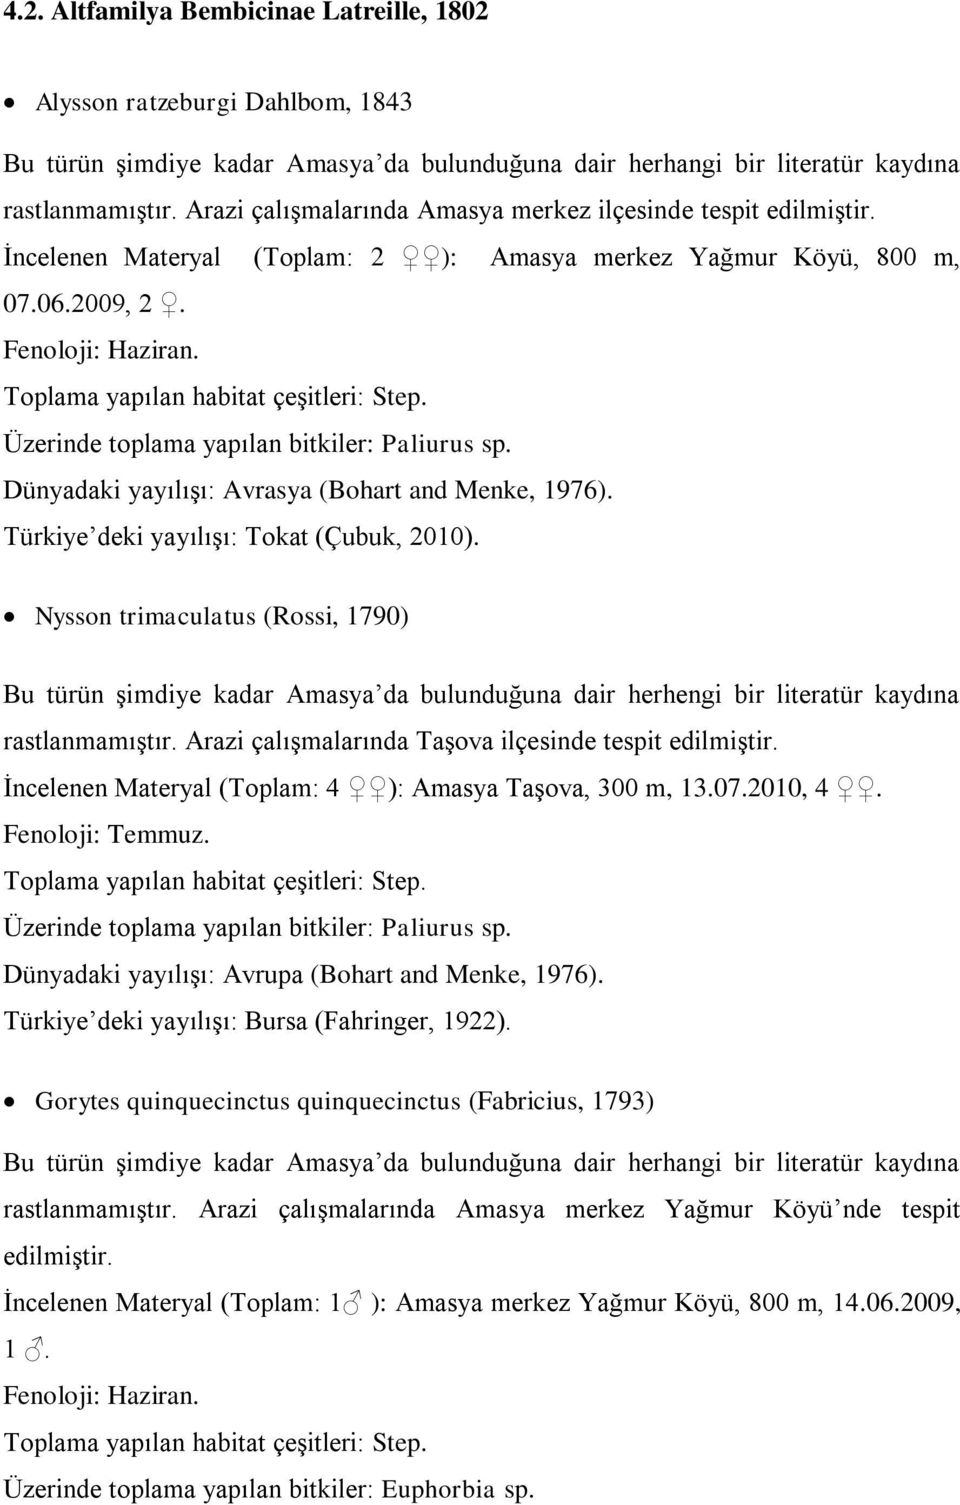 Dünyadaki yayılışı: Avrasya (Bohart and Menke, 1976). Türkiye deki yayılışı: Tokat (Çubuk, 2010).